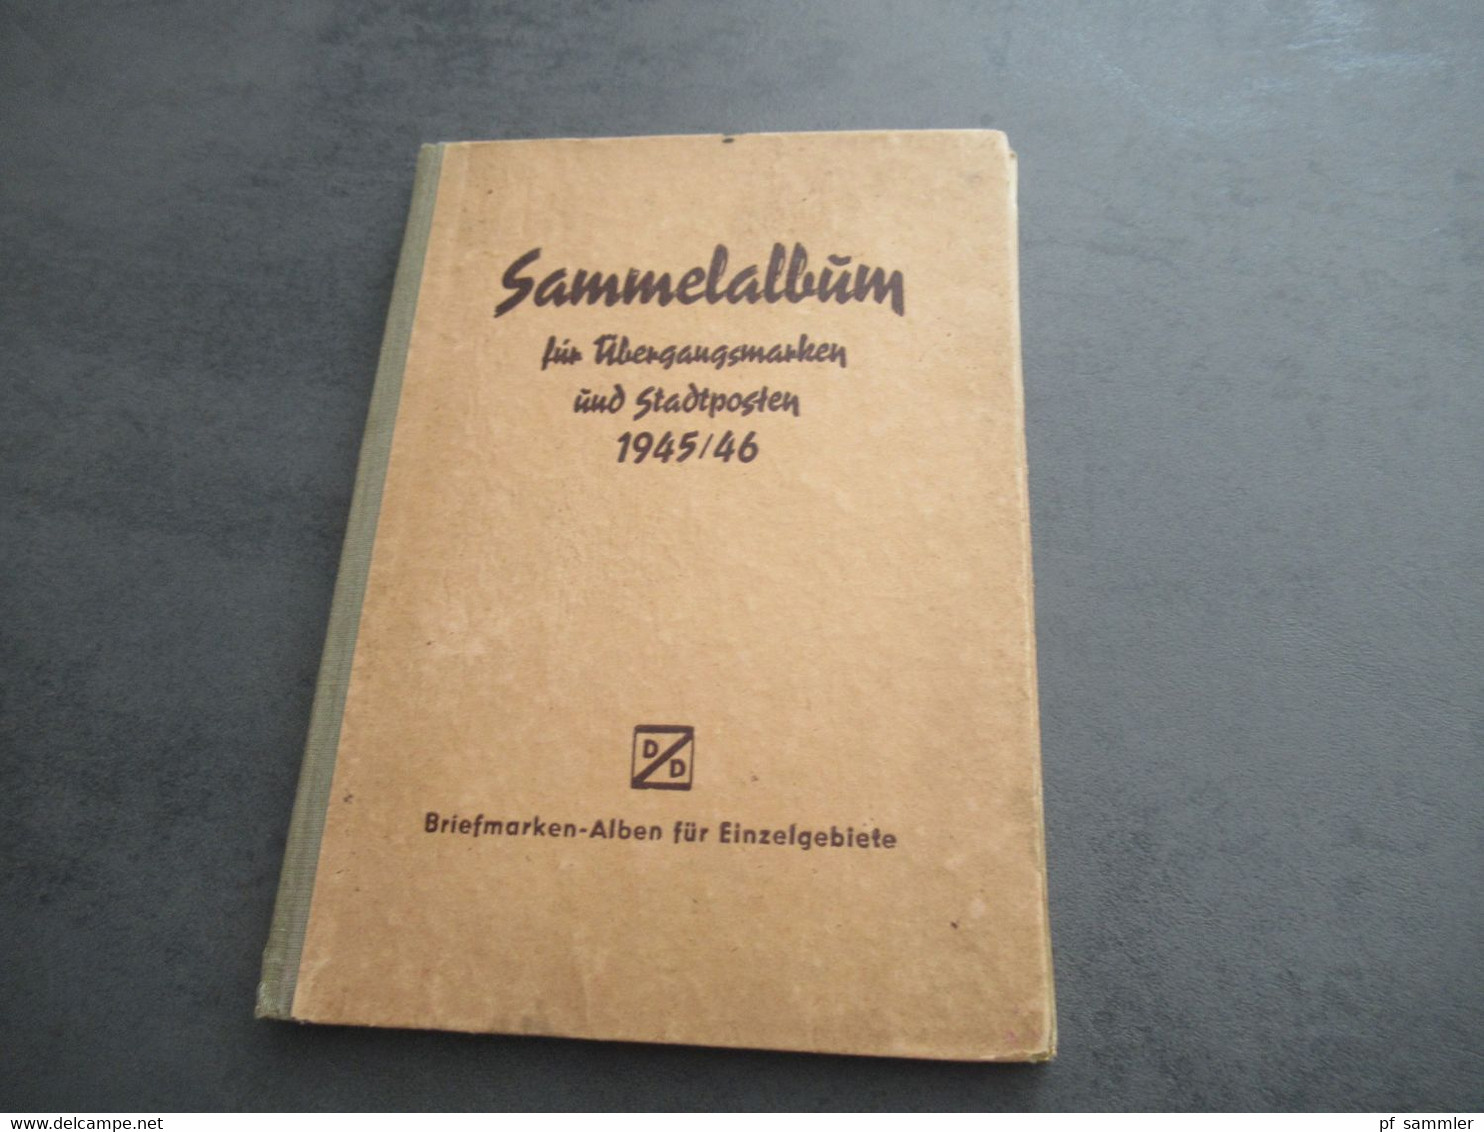 Sammelalbum Für Übergangsmarken Und Stadtposten 1945 / 46 D/D Briefmarken-Alben Für Einzelgebiete - Colecciones (en álbumes)